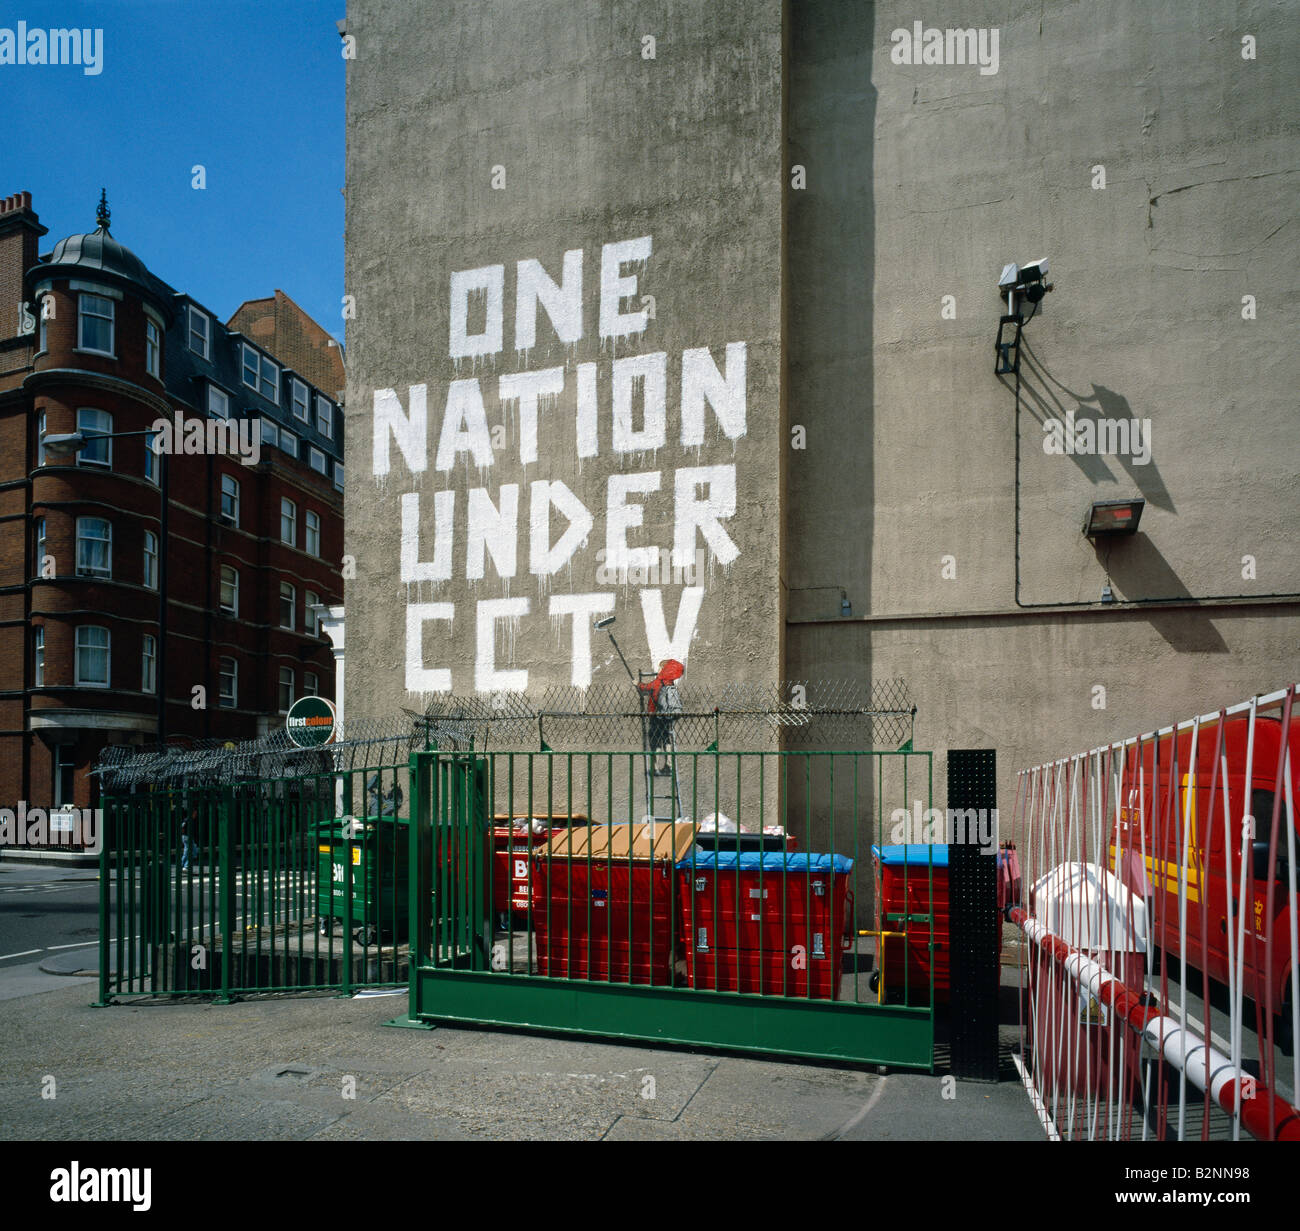 Artiste graffiti politique guérilla par Banksy. Newman Street, Londres, Angleterre, Royaume-Uni. Banque D'Images